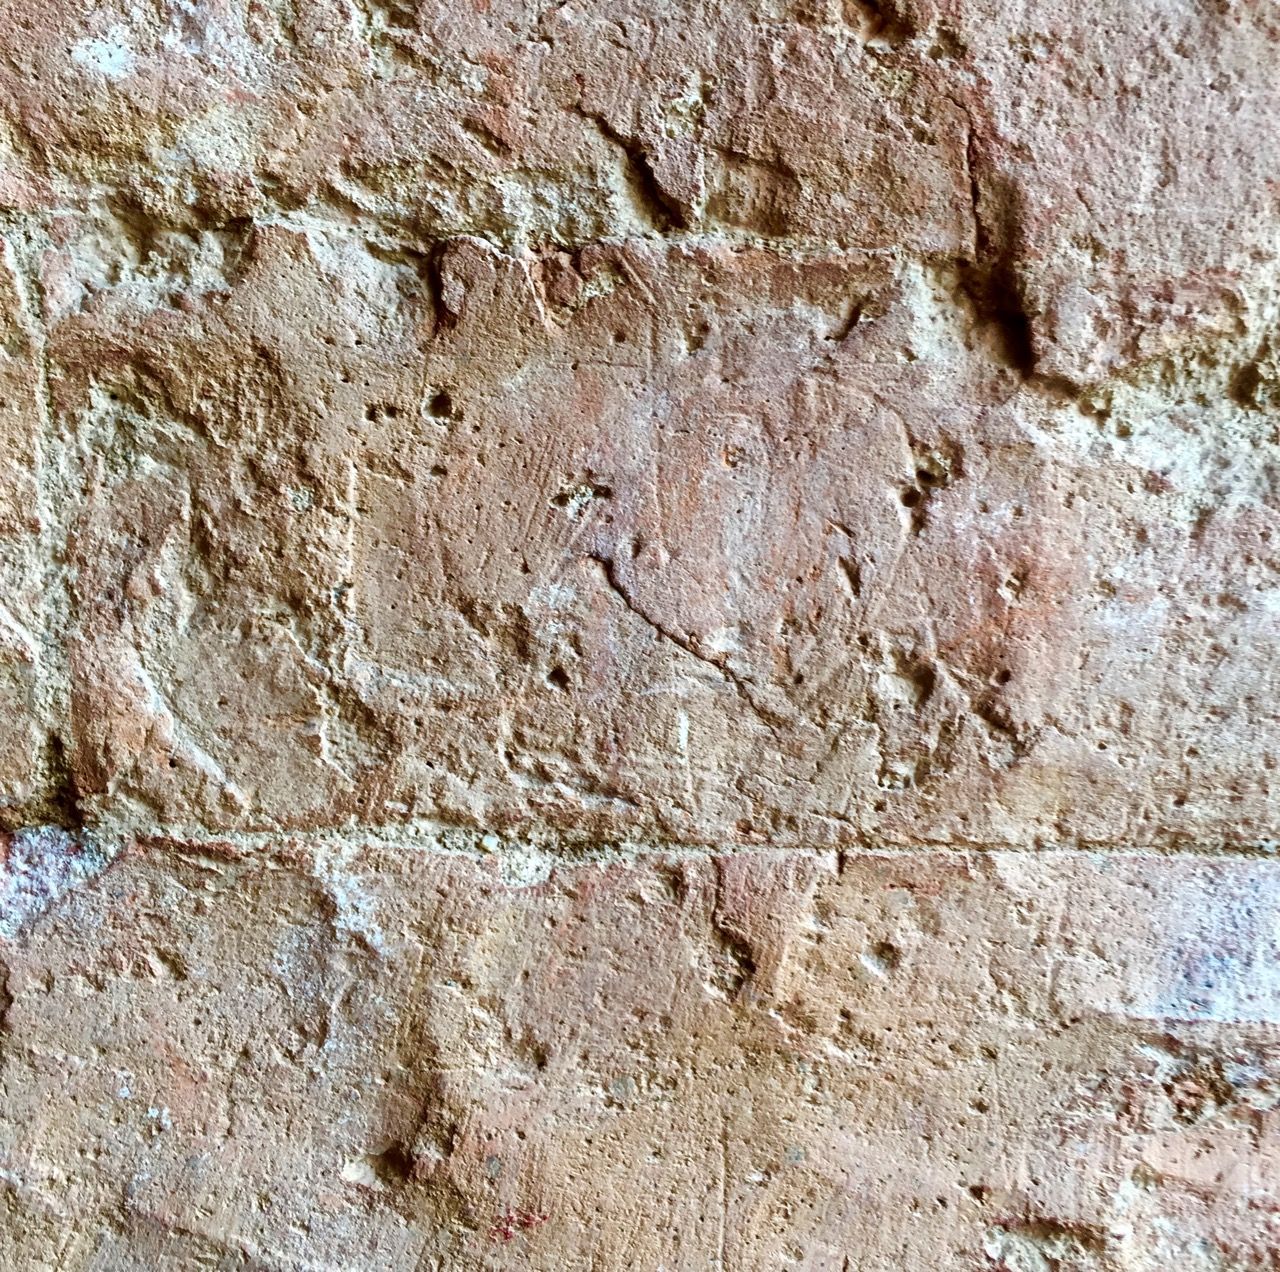 Close-up of bricks without mortar.